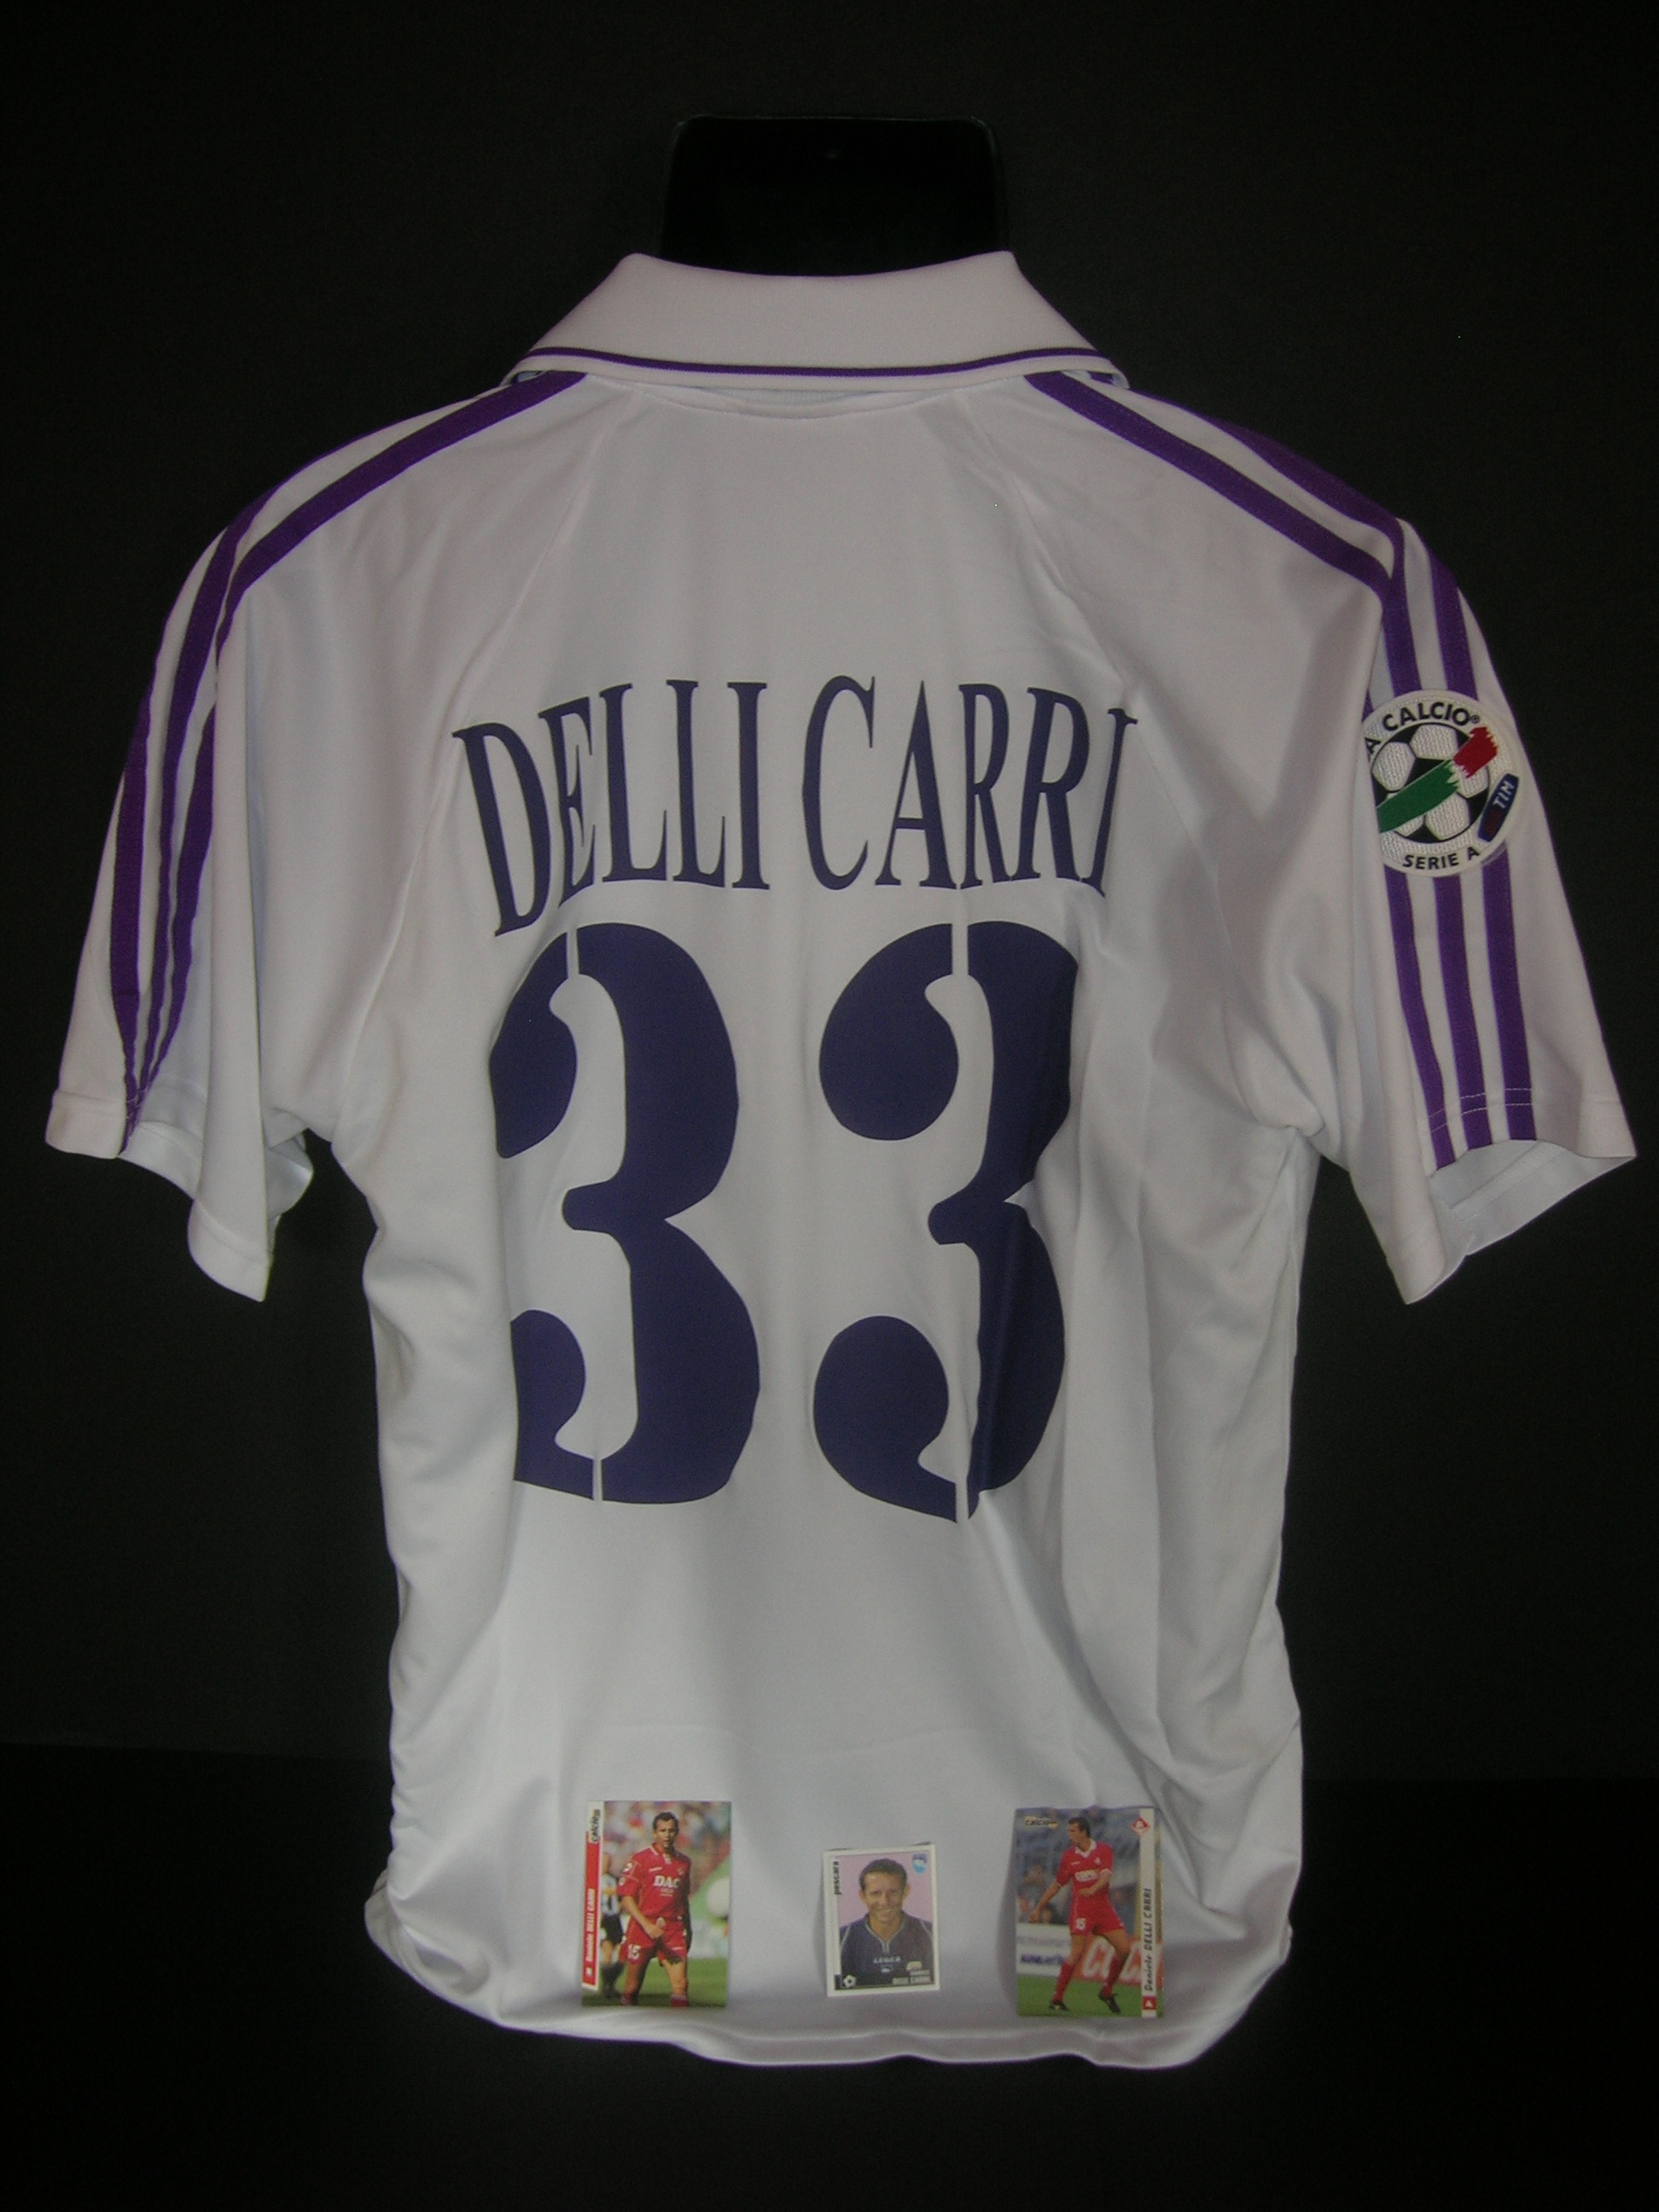 Fiorentina  Delli Carri  33-B-2